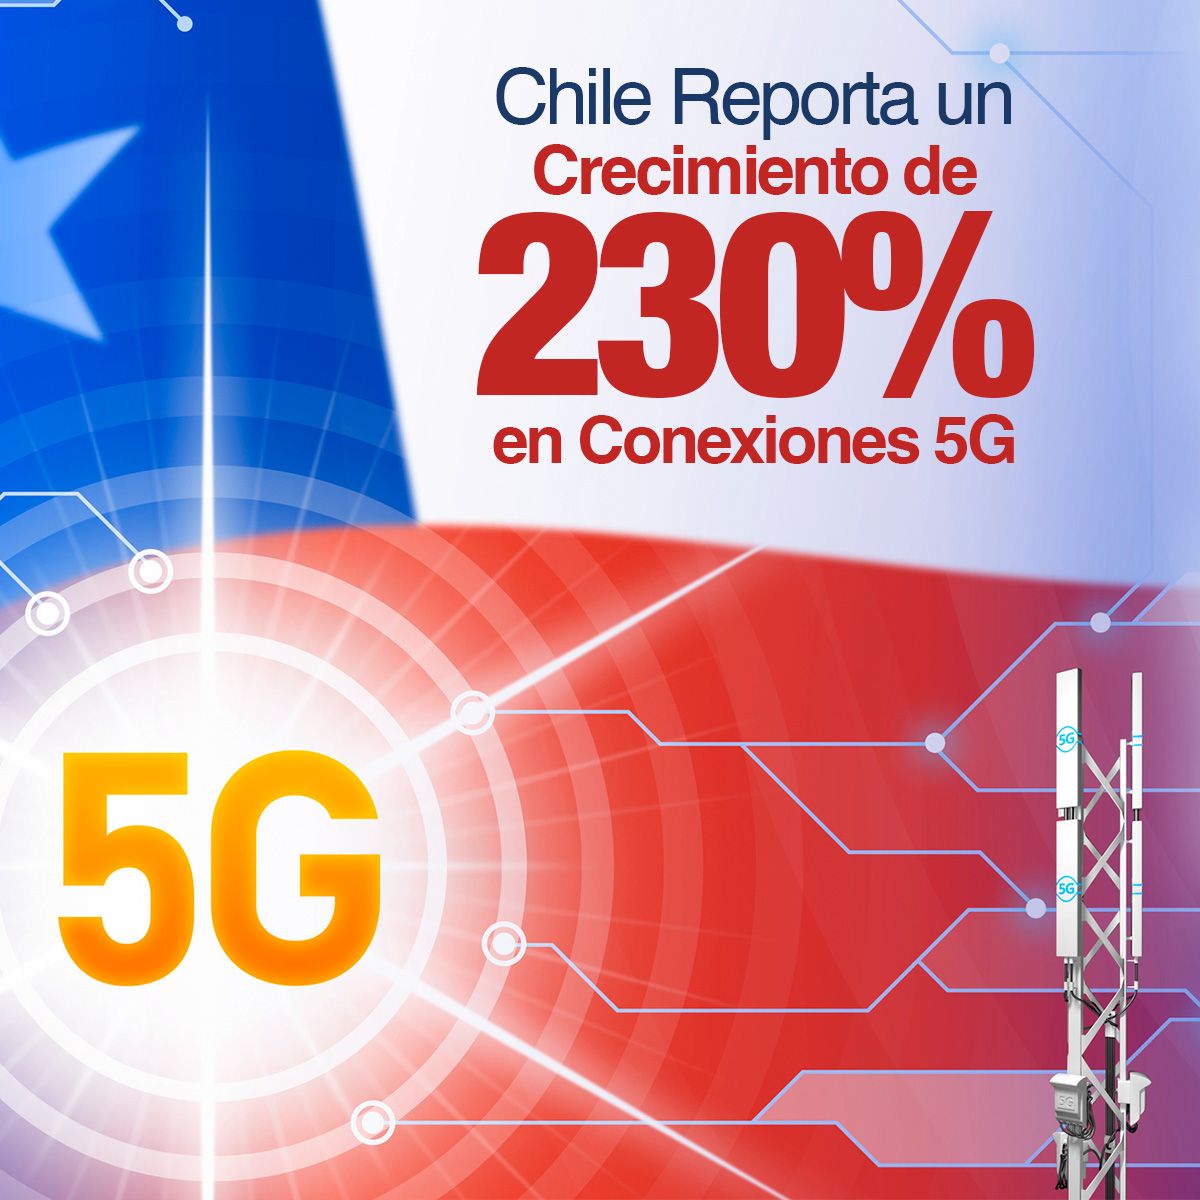 Chile Reporta un Crecimiento de 230% en Conexiones 5G